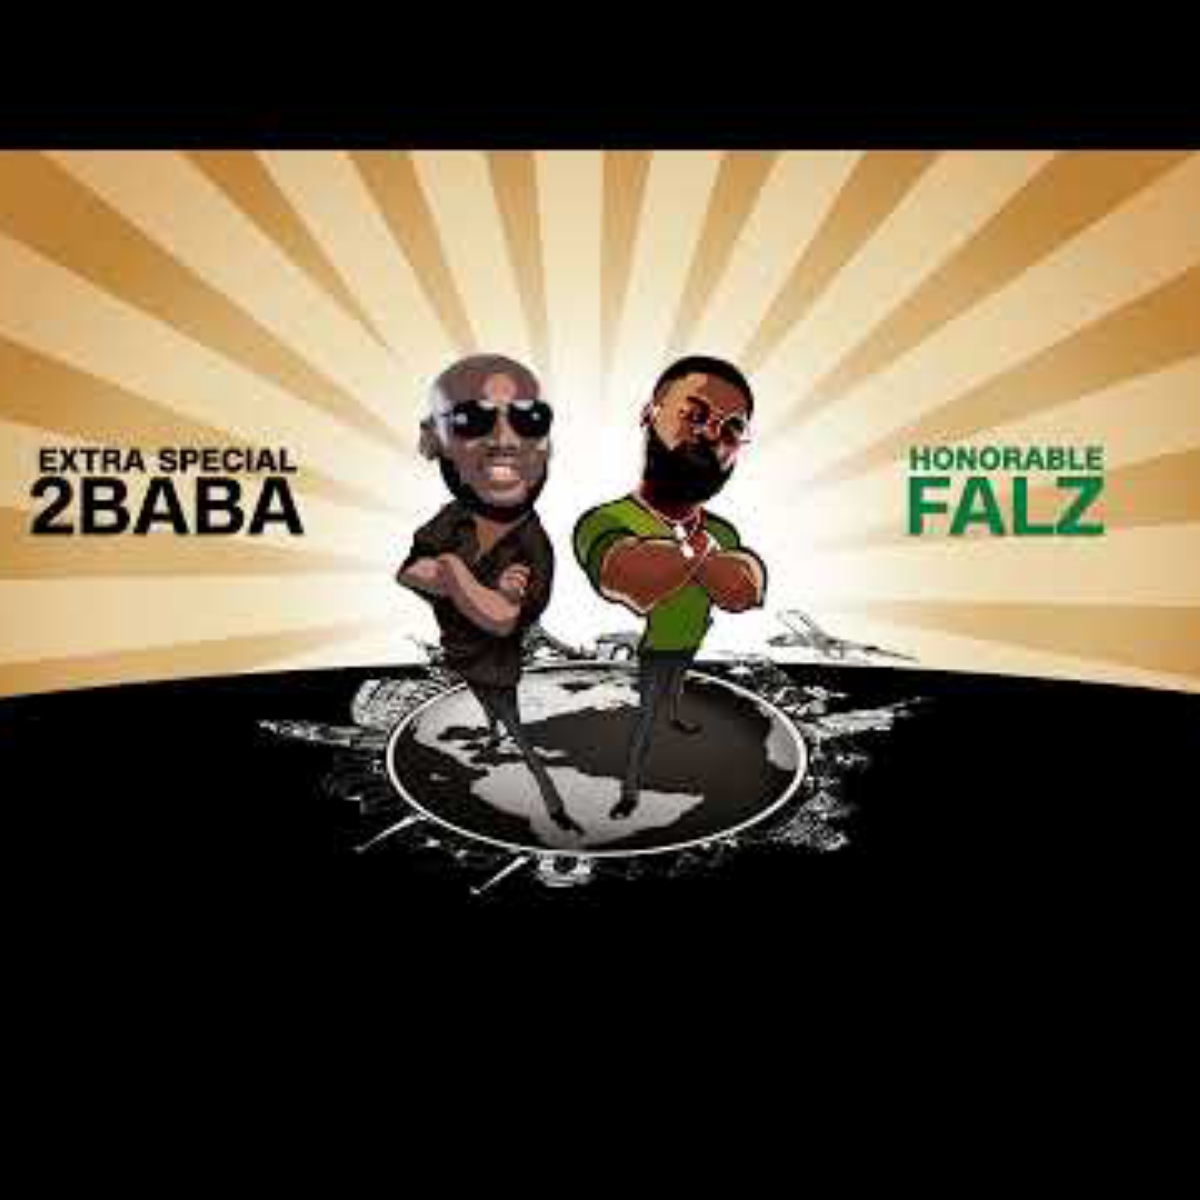 2Baba – Rise Up ft. Falz